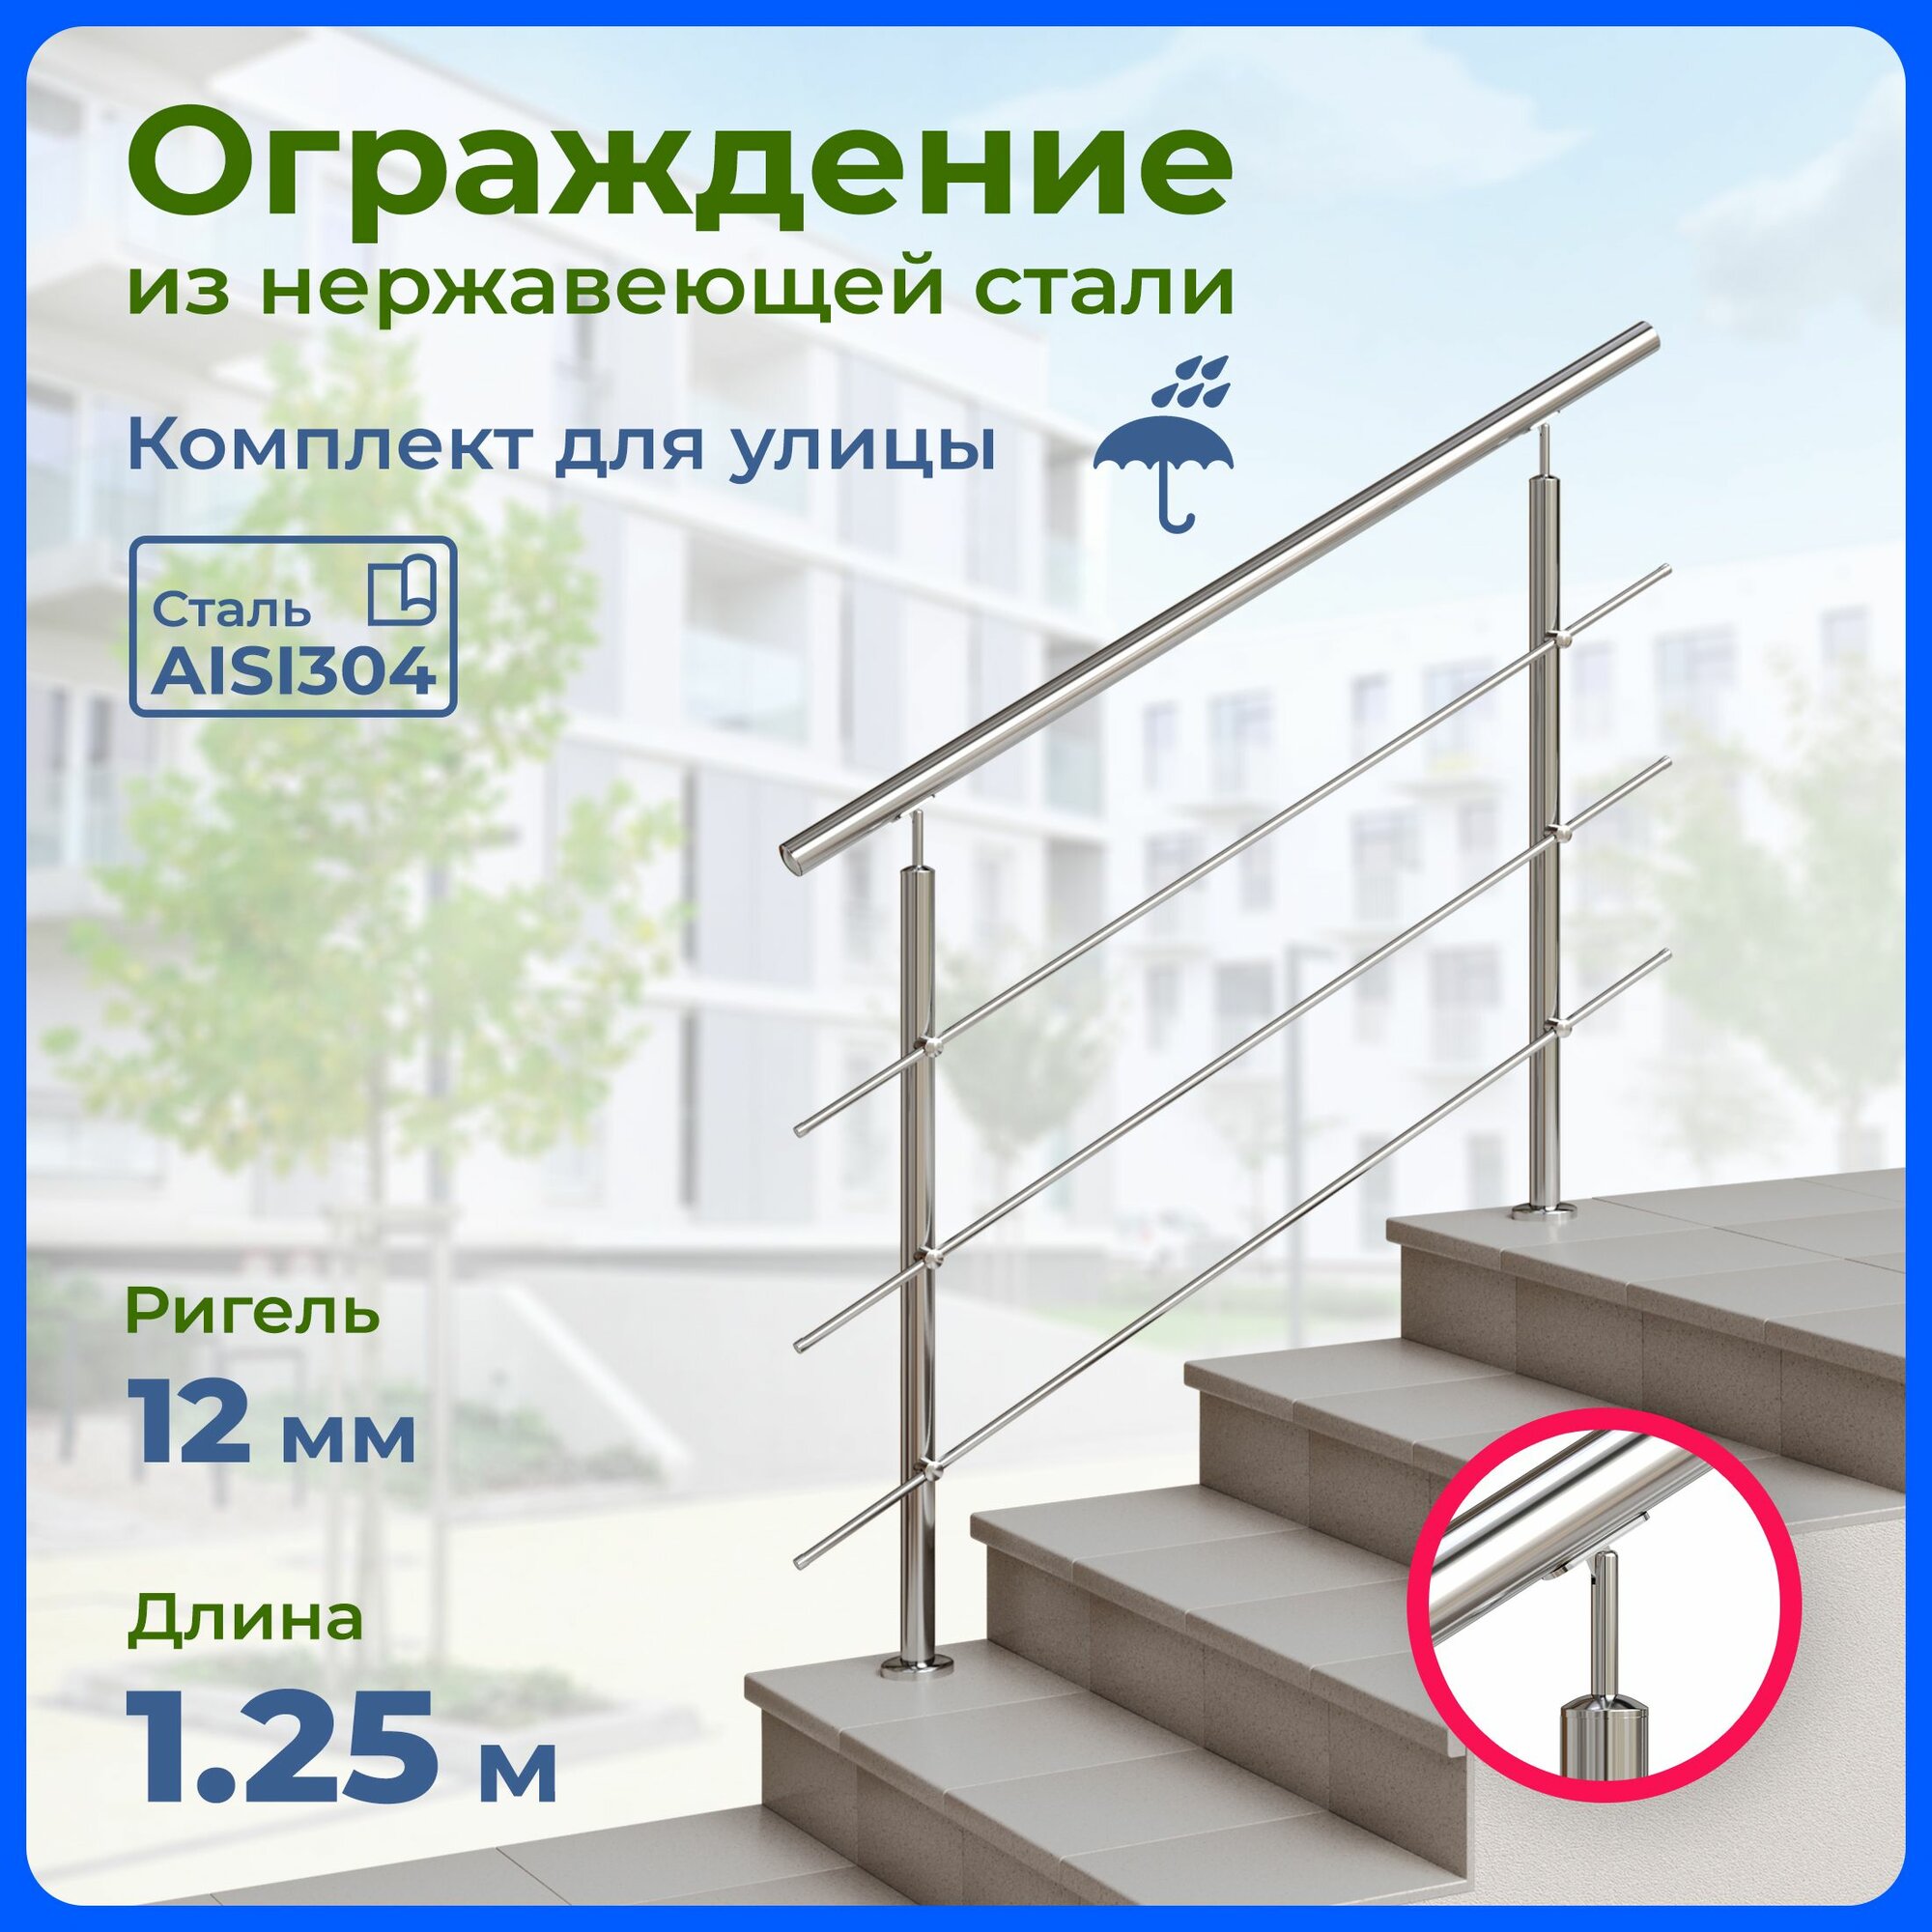 Перила для лестницы, длина 1.25 м, ригель 12 мм, ограждение уличное из нержавеющей стали AISI304